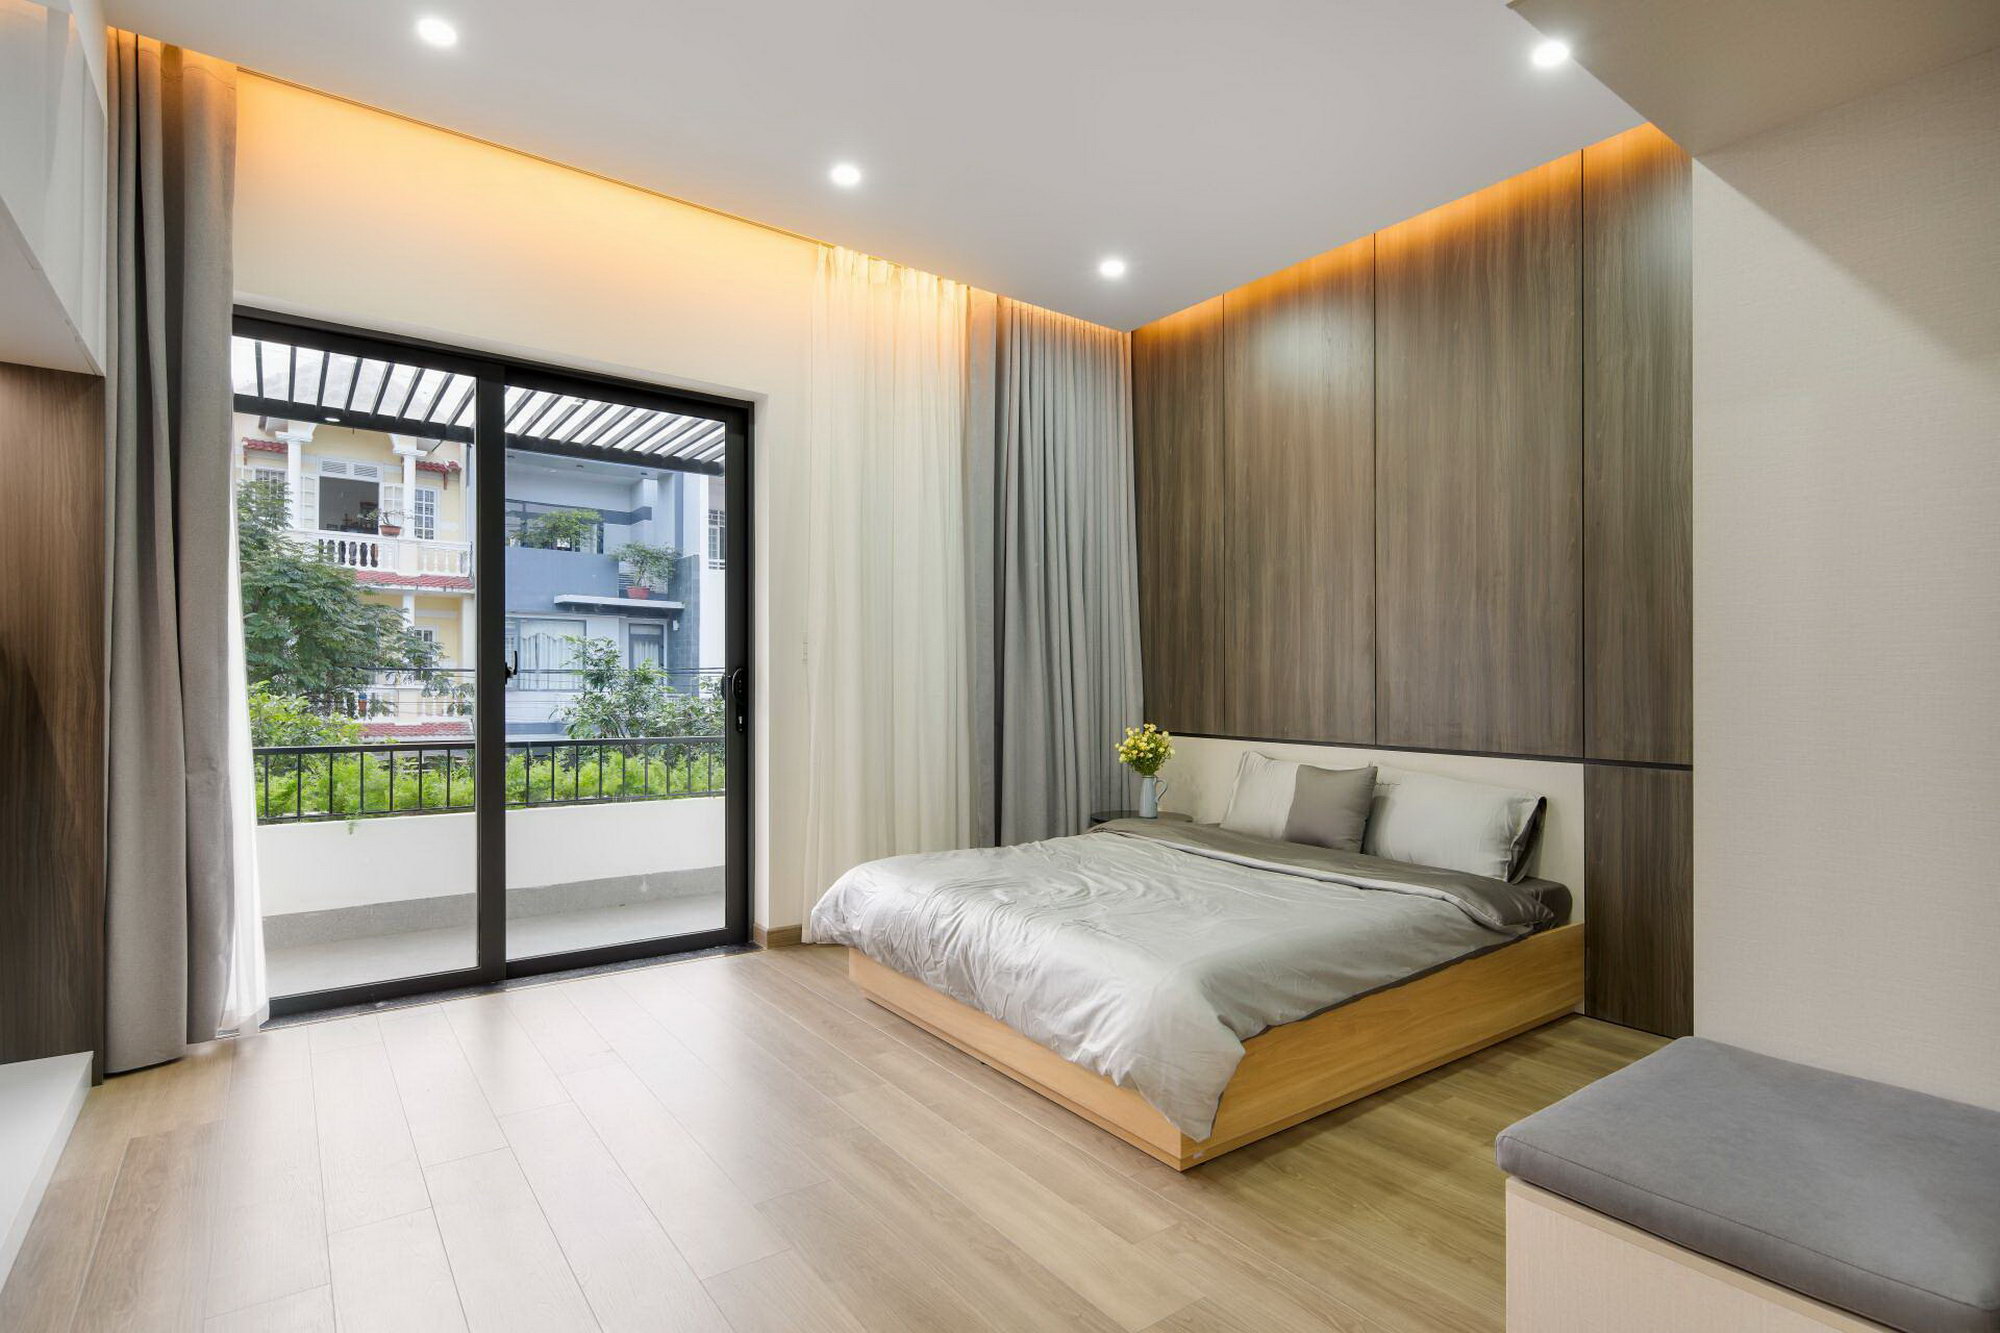 thiết kế phòng ngủ nhà phố 5x20m tối giản với gam màu nâu mang cảm giác ấm cúng